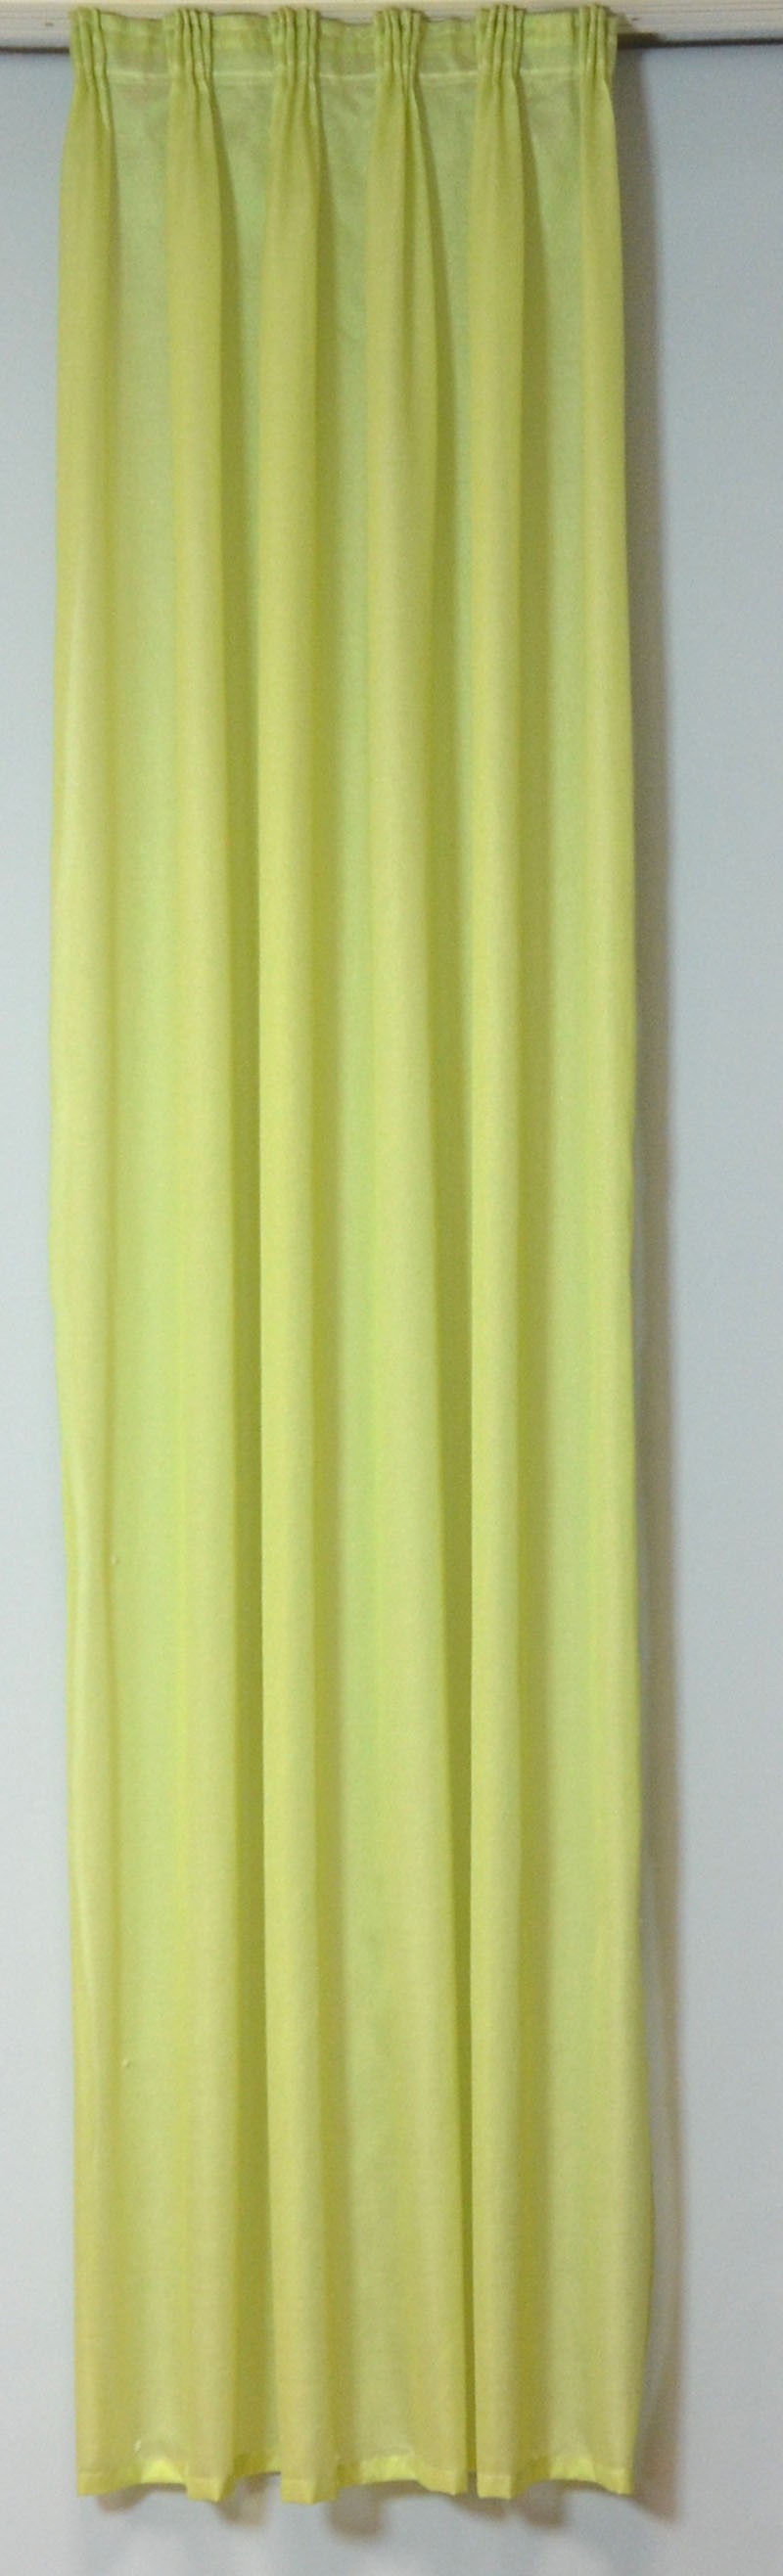 Seitenschal apfelgrün BxH 0,50 x 2,20 m Dekoschal